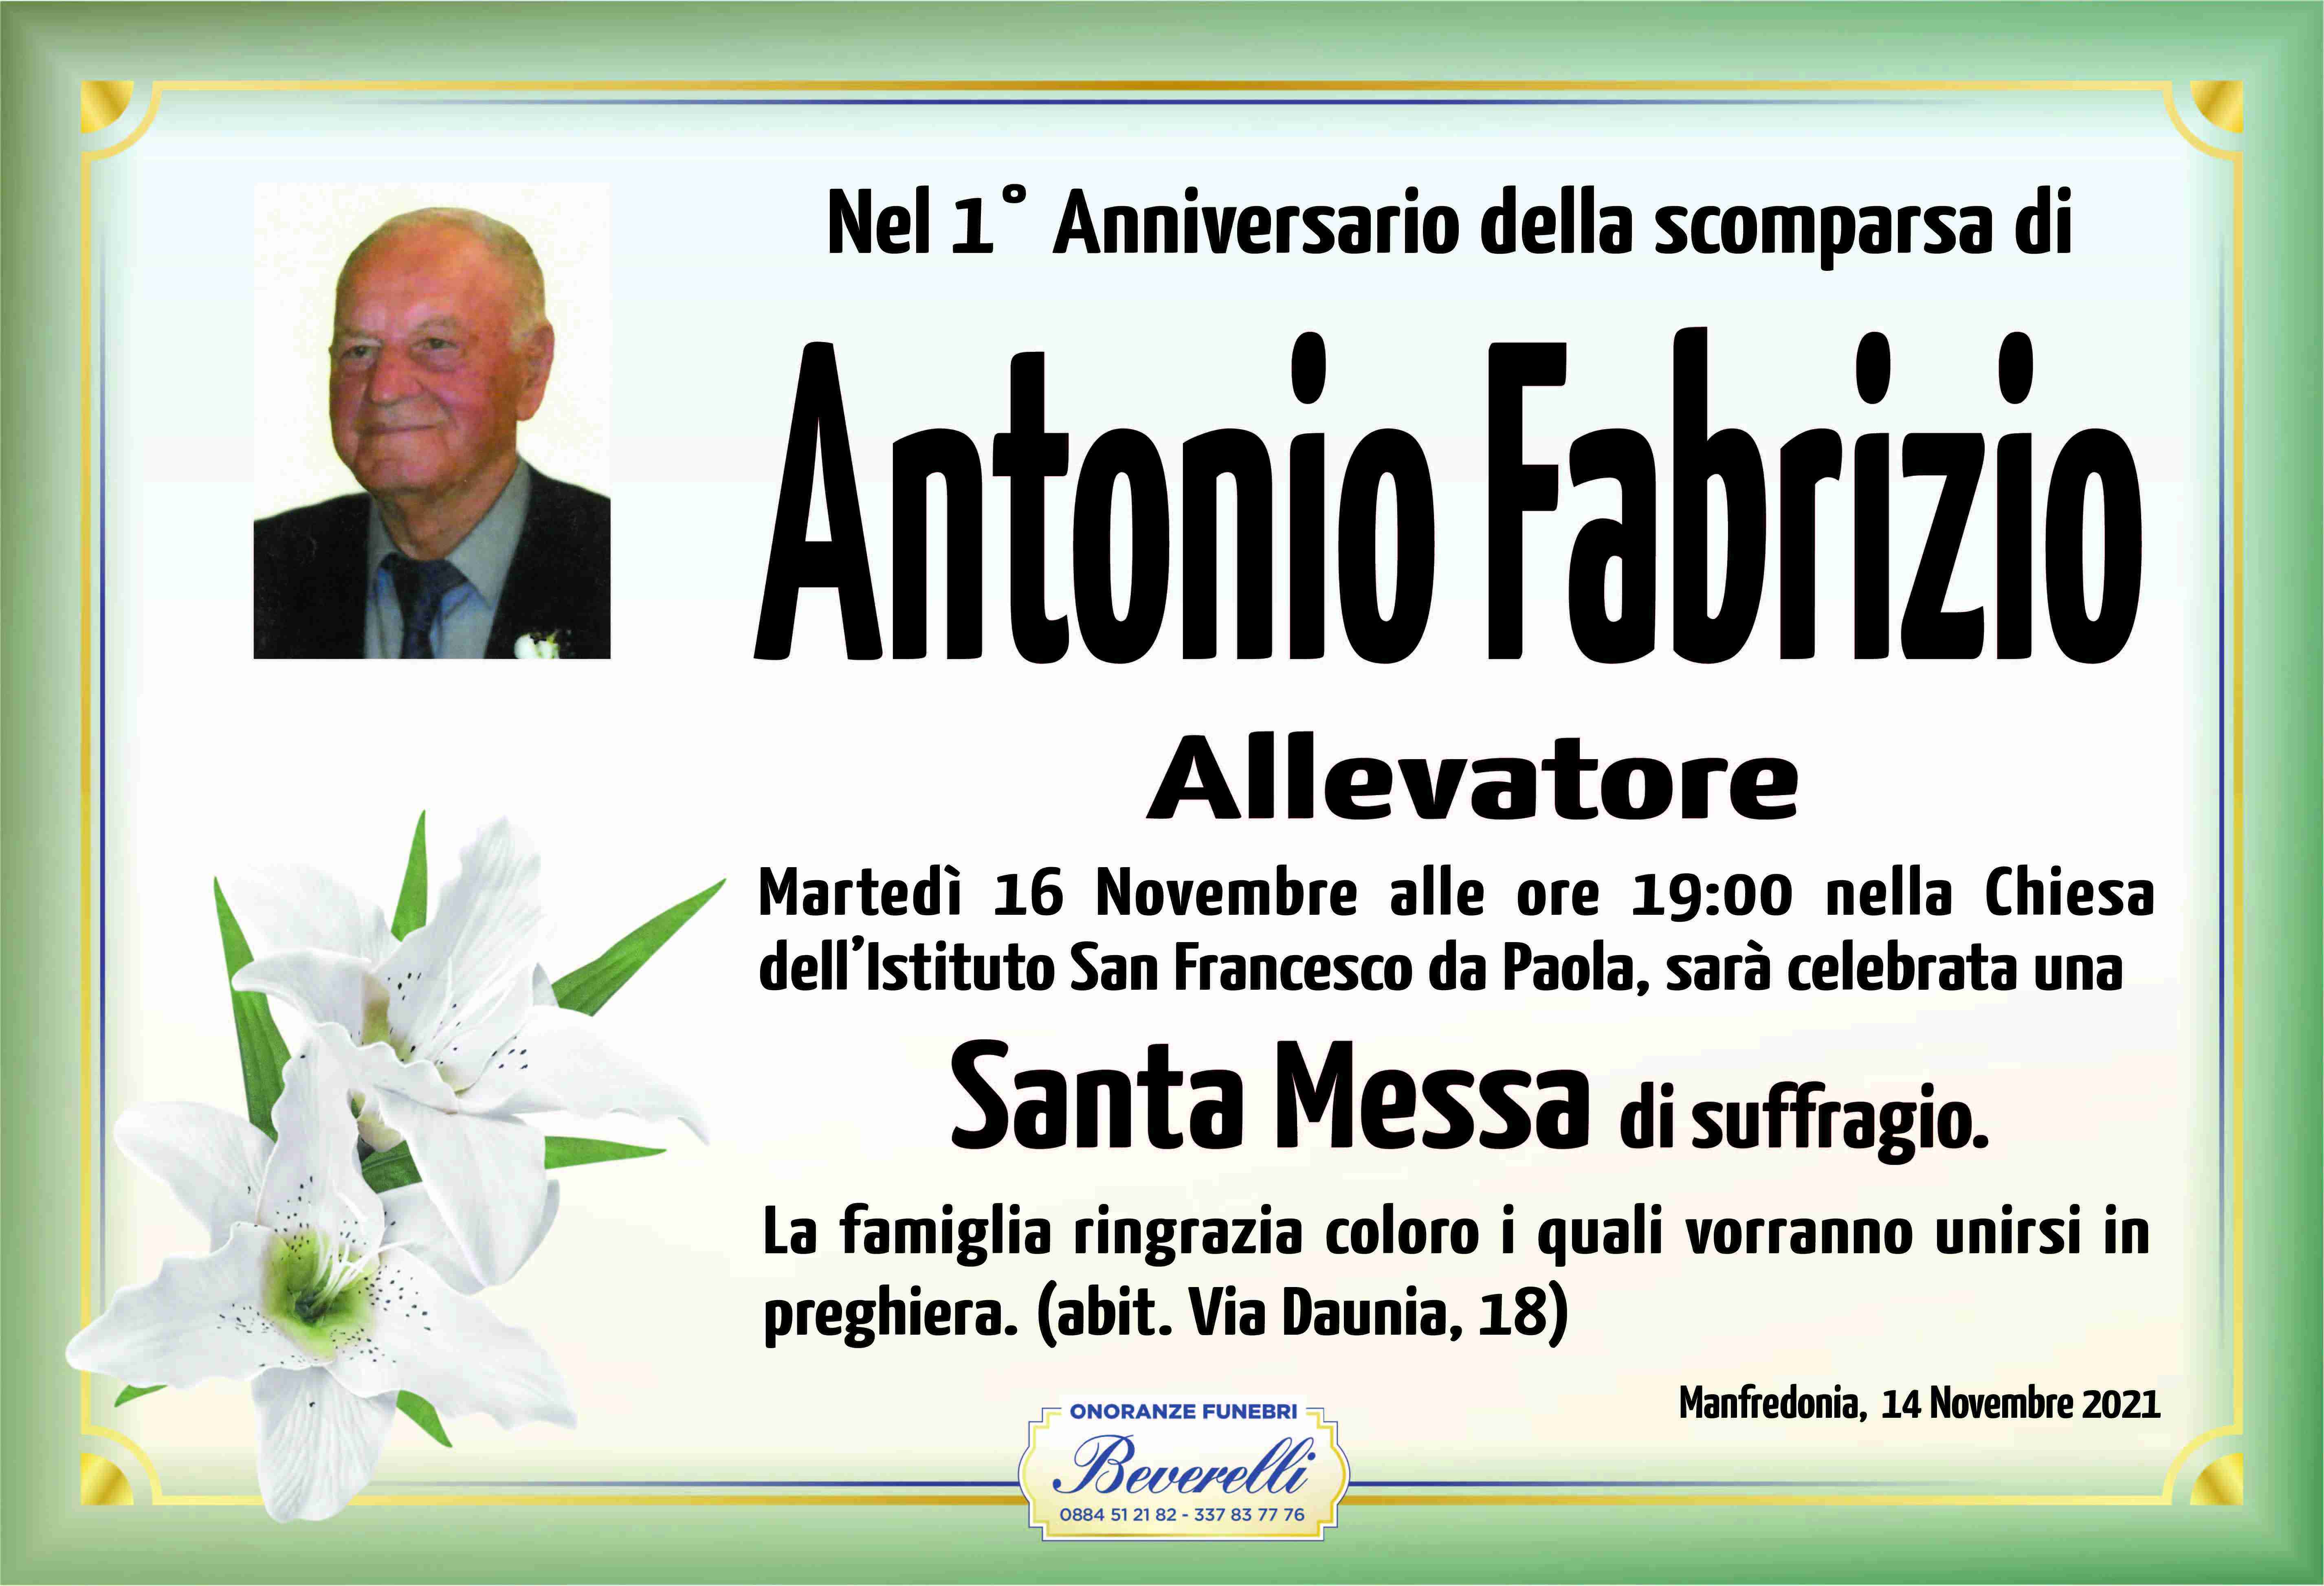 Antonio Fabrizio